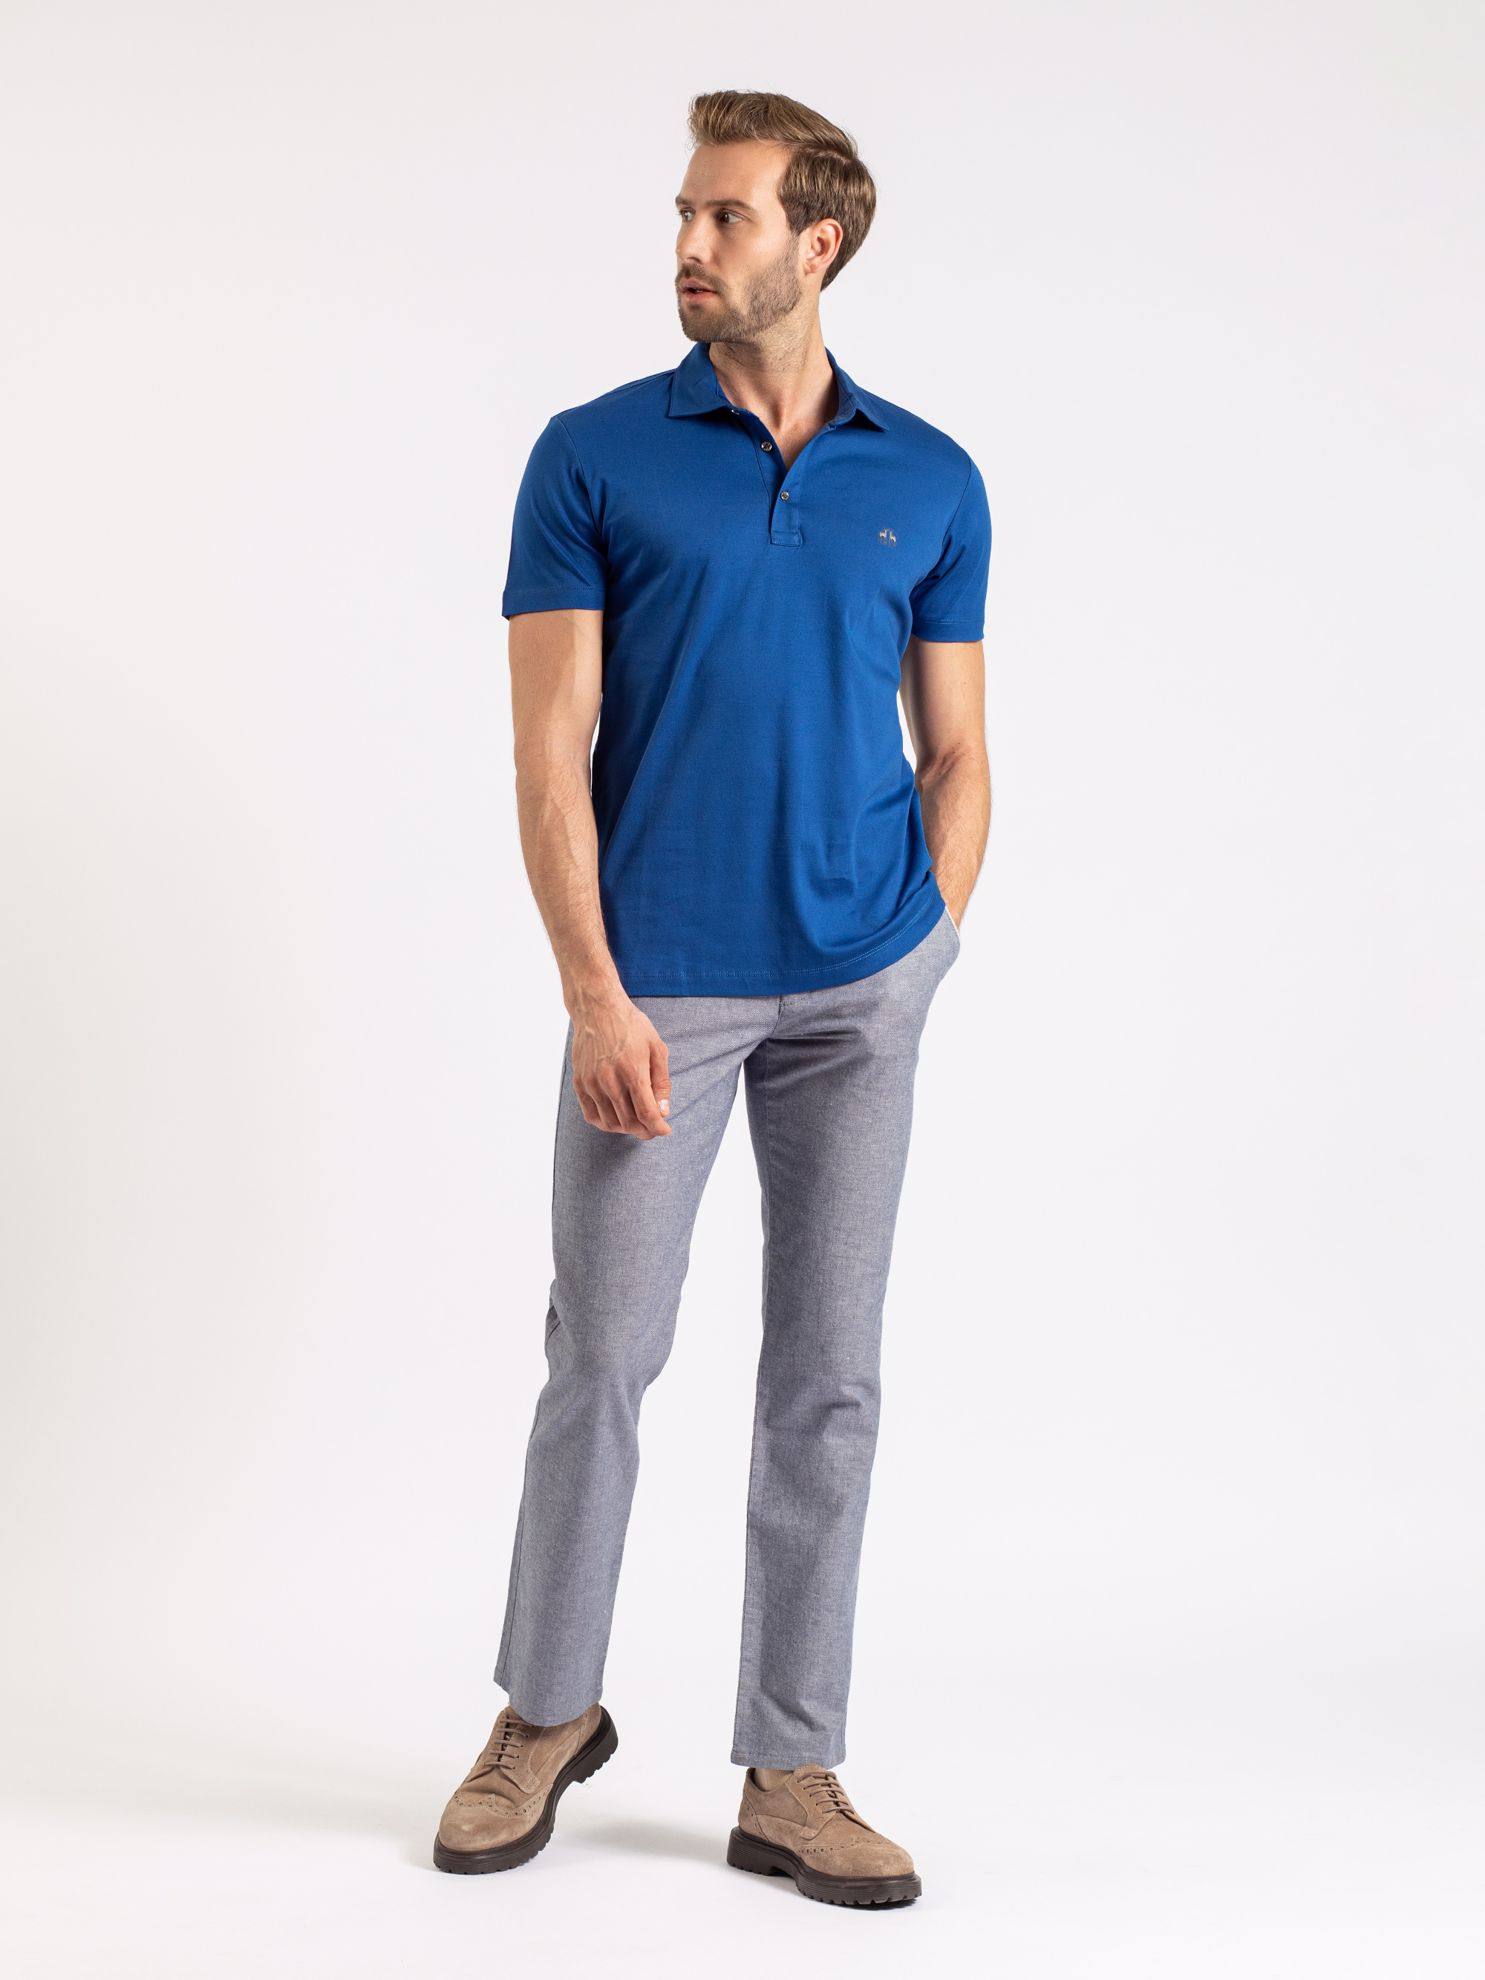 Karaca Erkek Slim Fit Polo Yaka Tişört-Havacı Mavi. ürün görseli